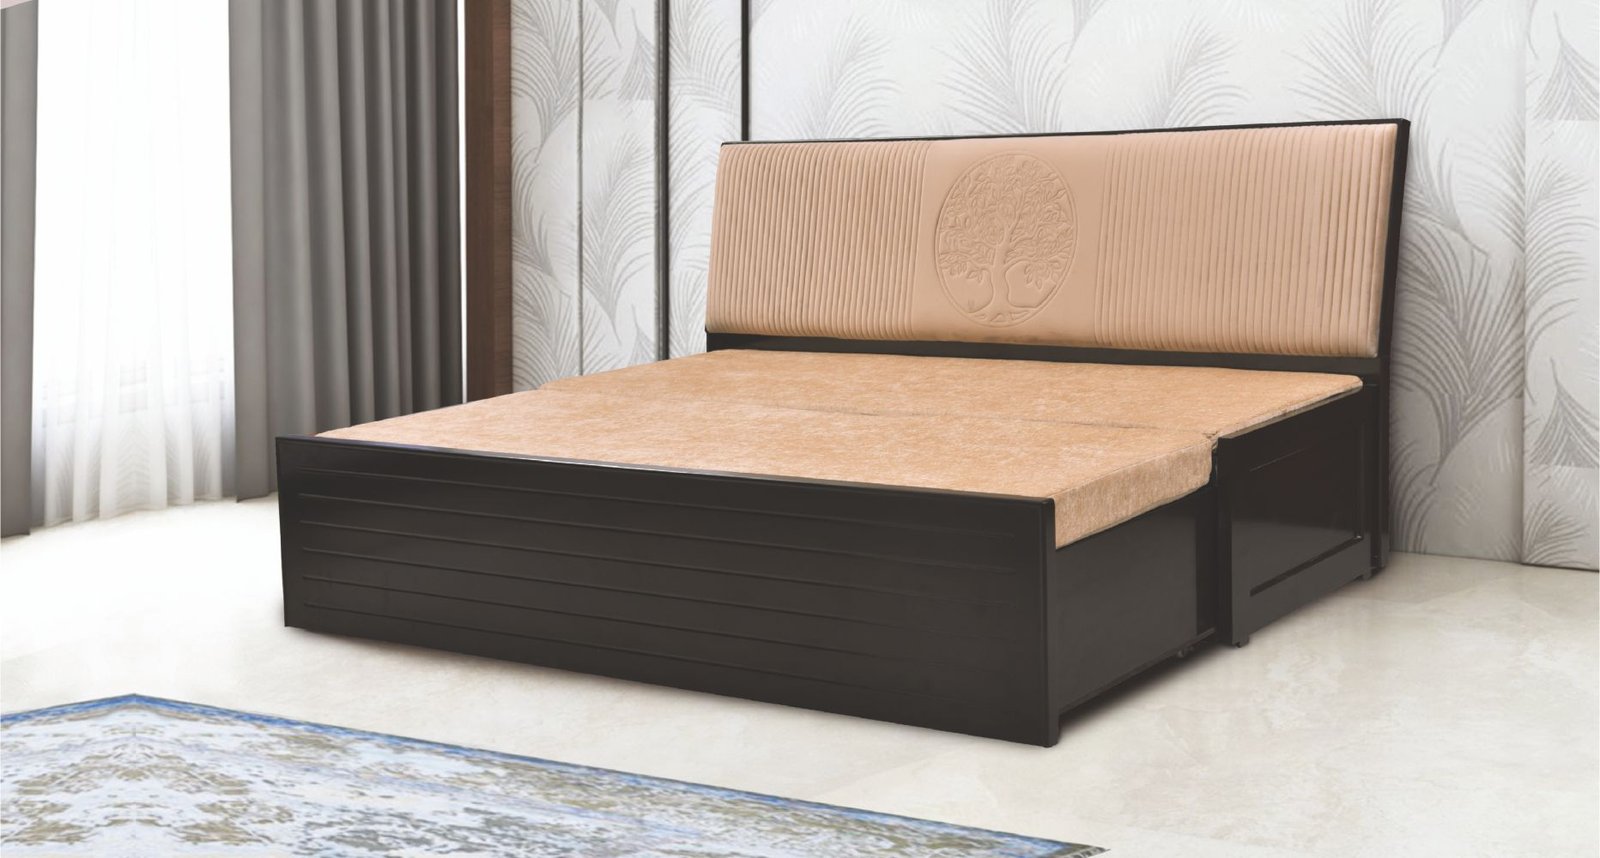 Sofa Beds Online At Smartwood Furniture